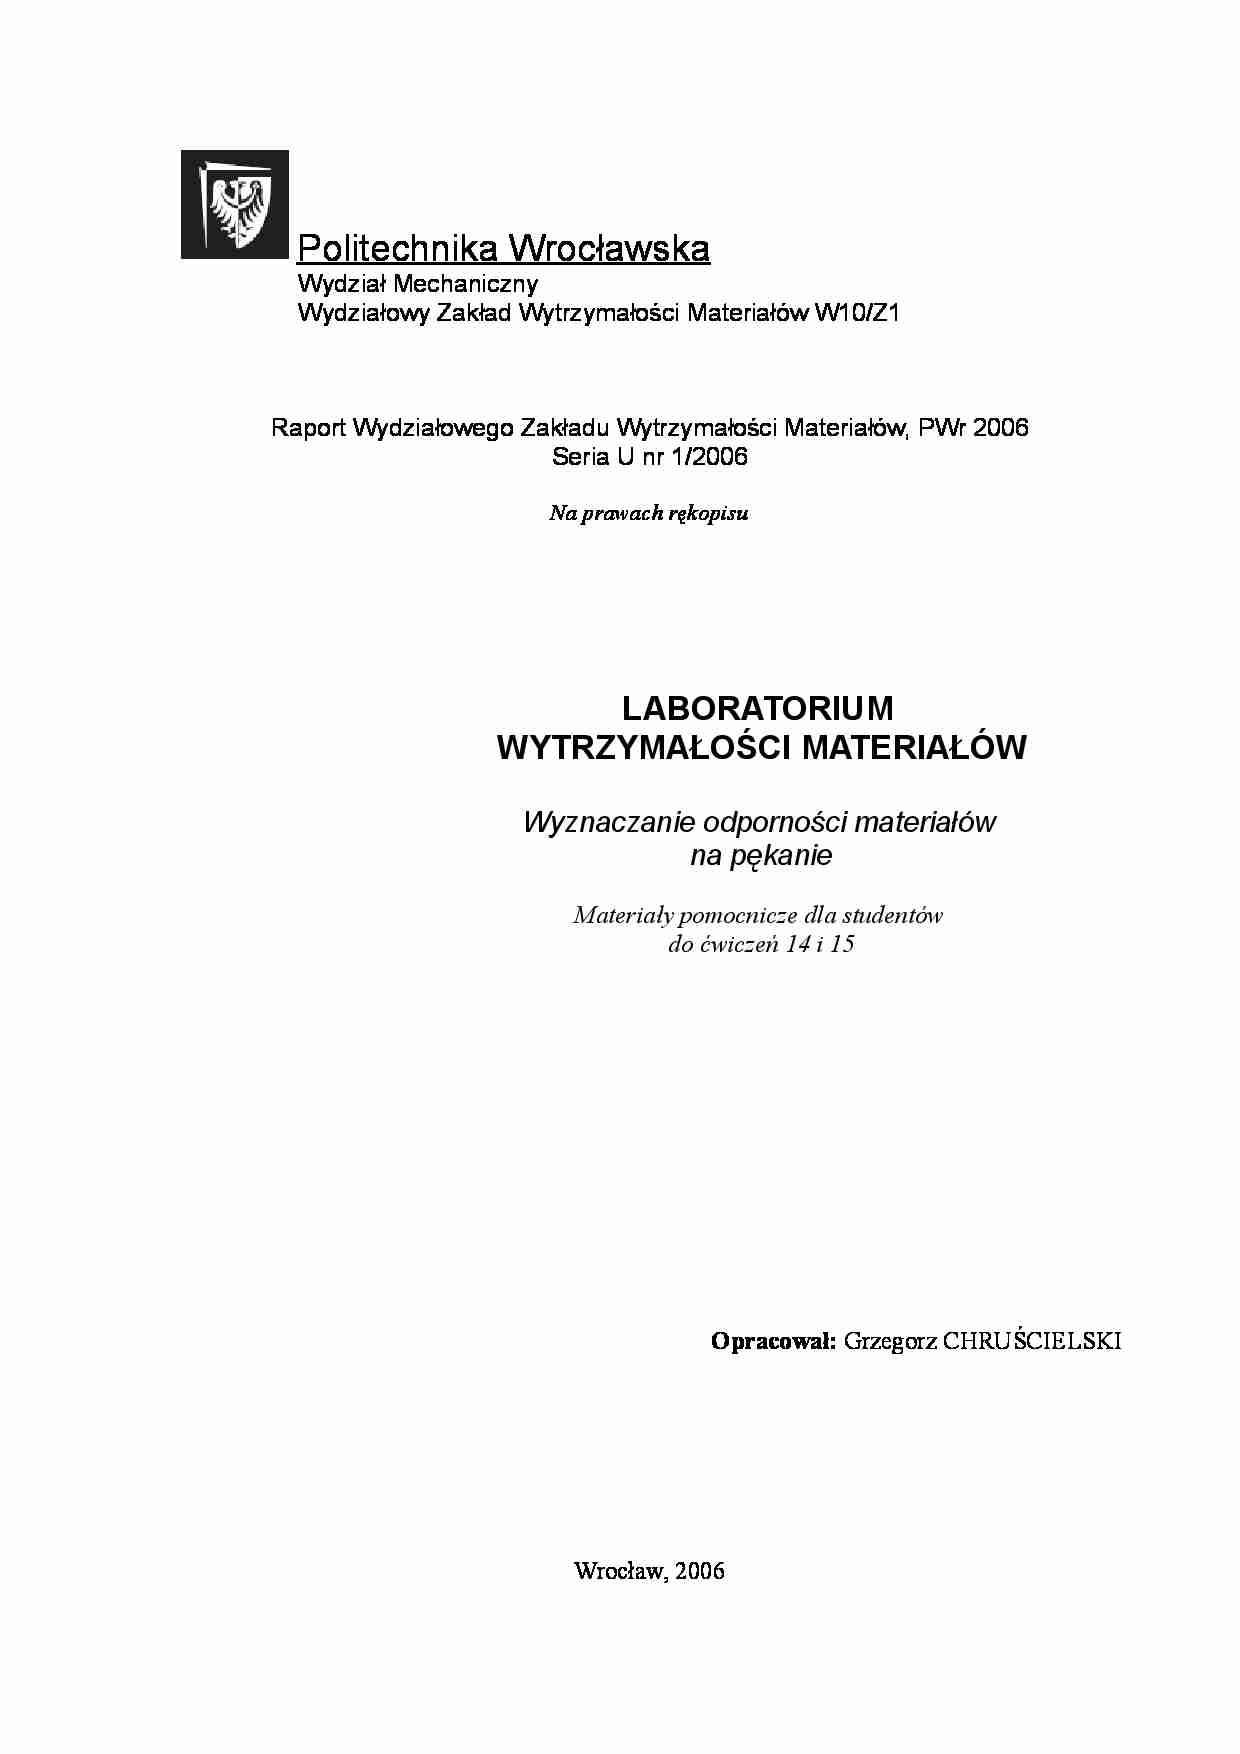 wyznaczanie odporności materiałów na pękanie - laboratorium - strona 1